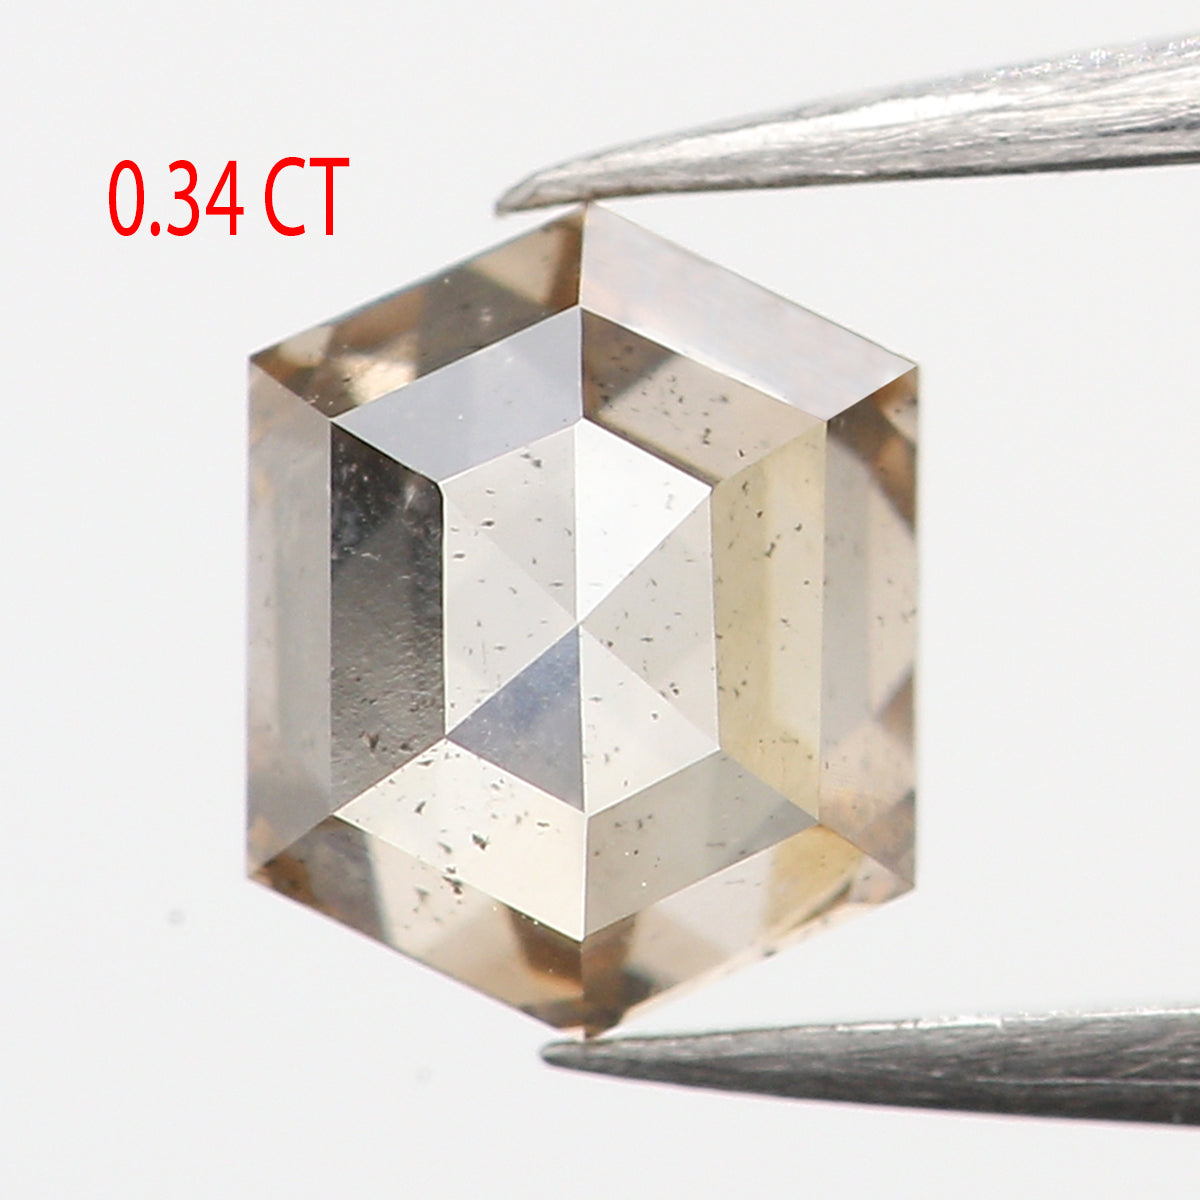 0.34 Ct Natural Loose Diamond, Hexagon Diamond, Brown Diamond, Polished Diamond, Rustic Diamond, Rose Cut Diamond, KR2322